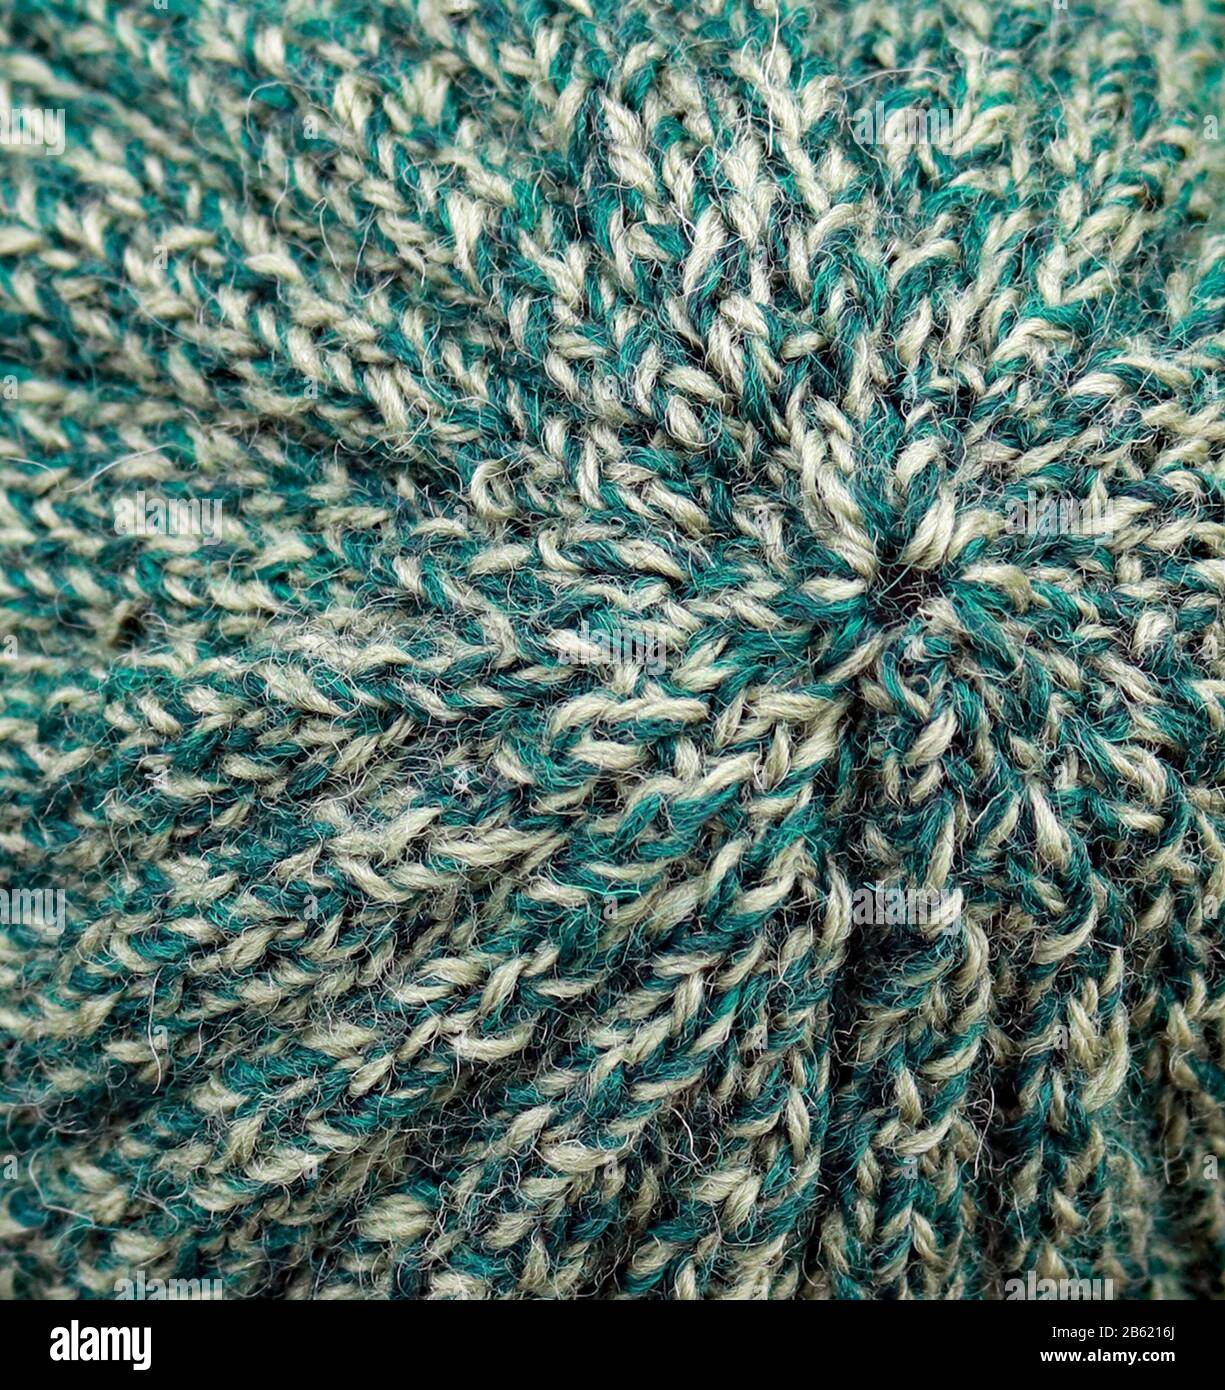 Un chapeau à côtes texturé pour adultes est tricoté à la main de pure laine britannique dans des tons de vert tweedy. Banque D'Images